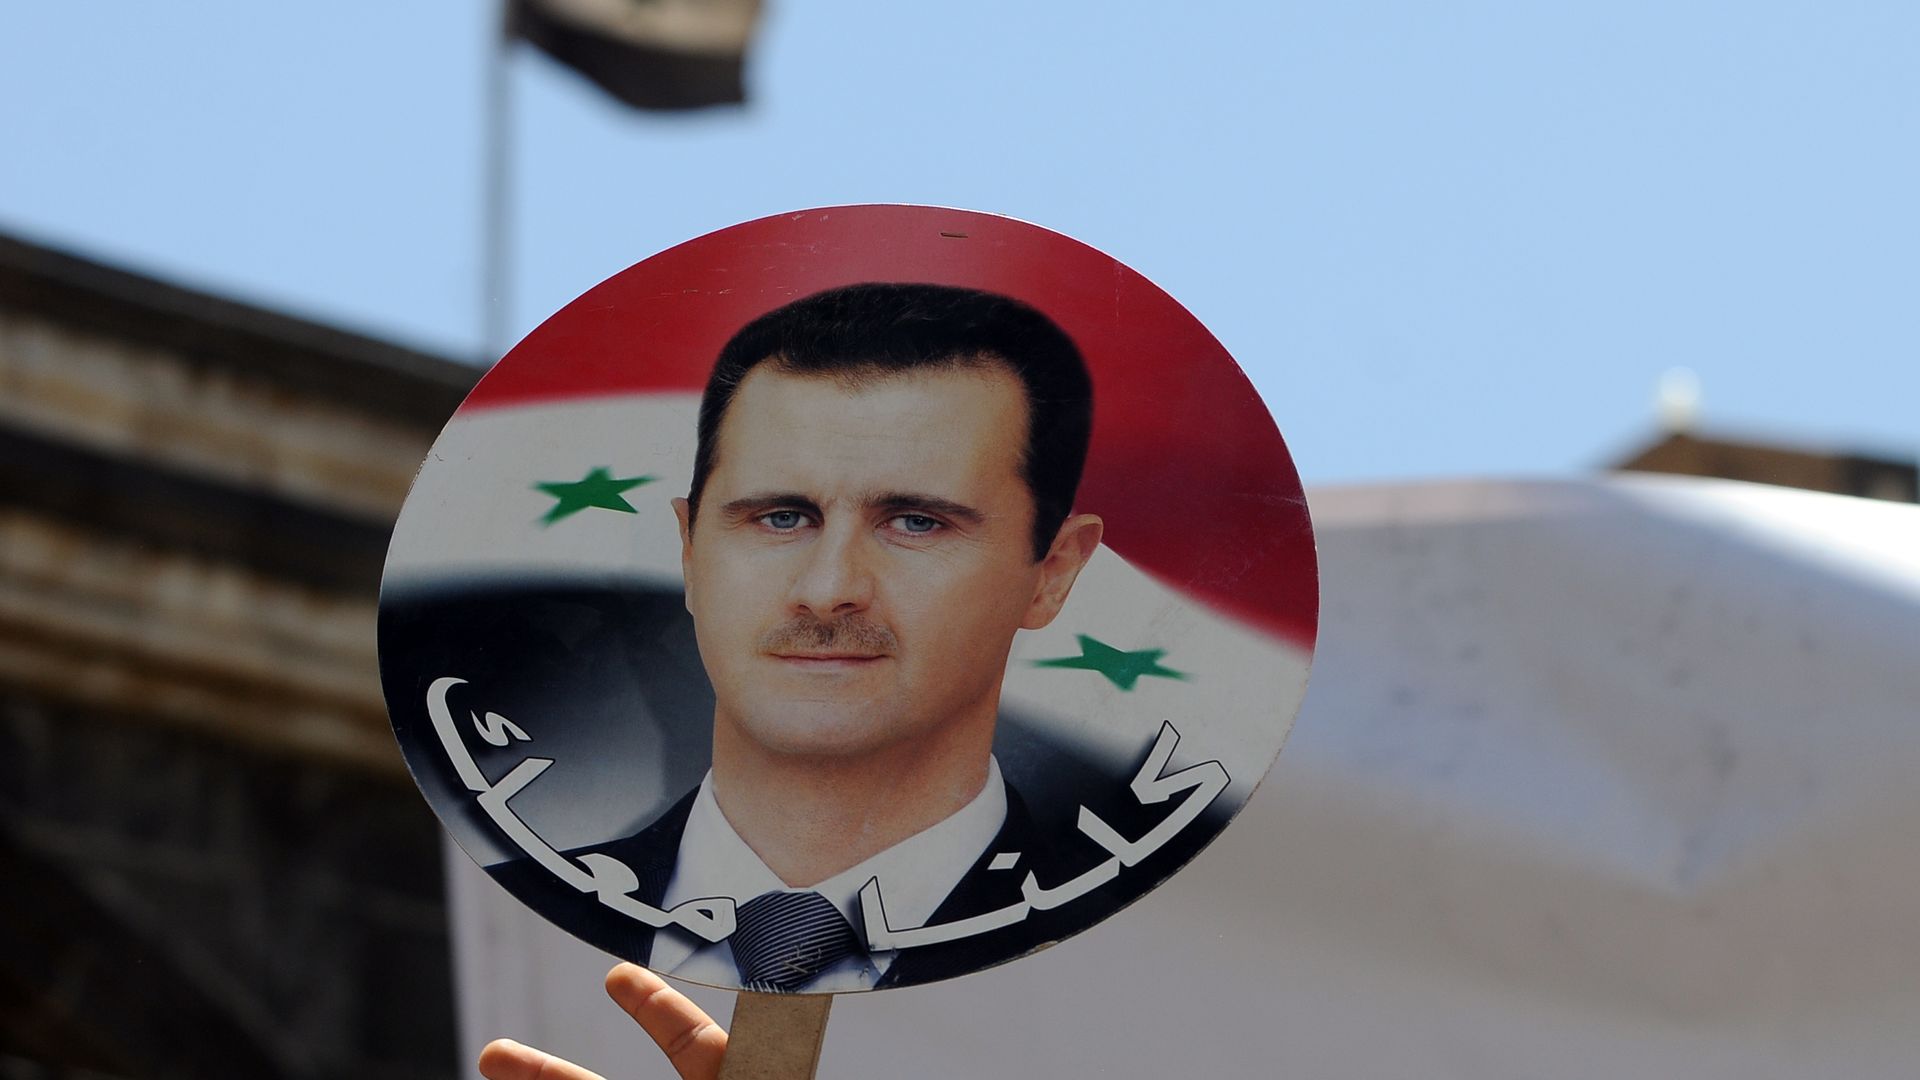 A sign of Syrian President Bashar al-Assad's face.